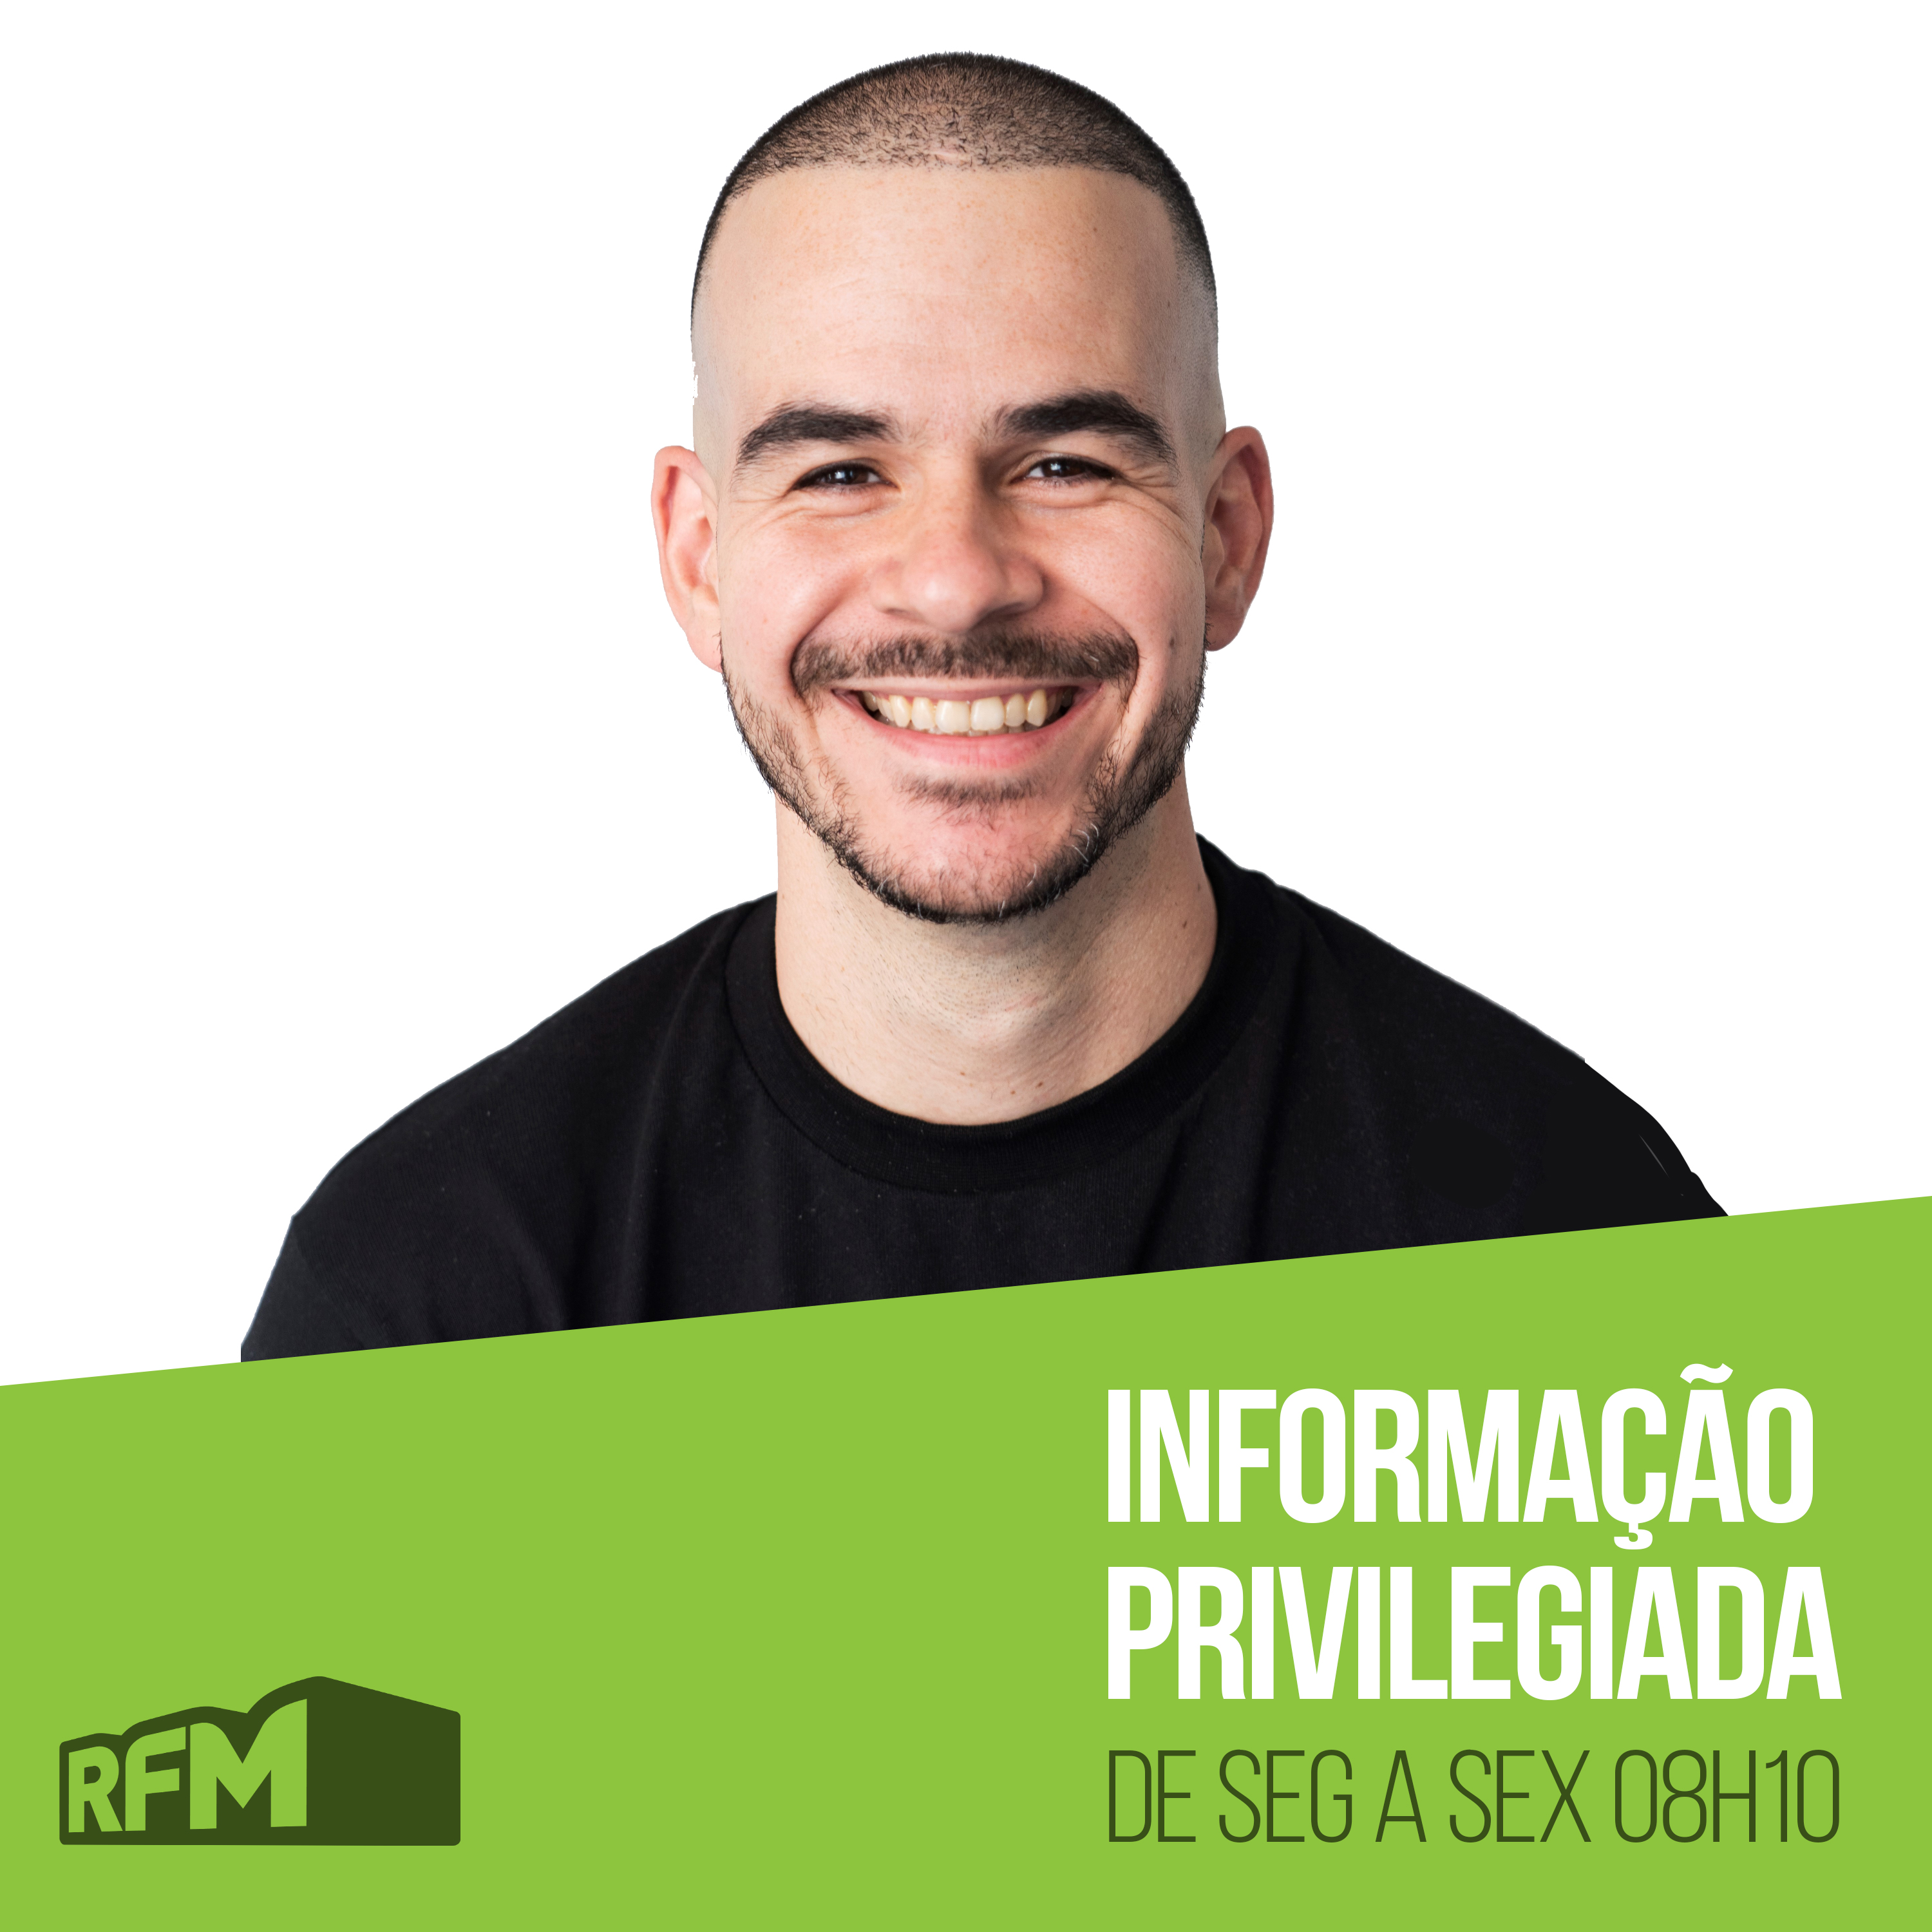 RFM - Informação Privilegiada: SALVADOR O FORRETA